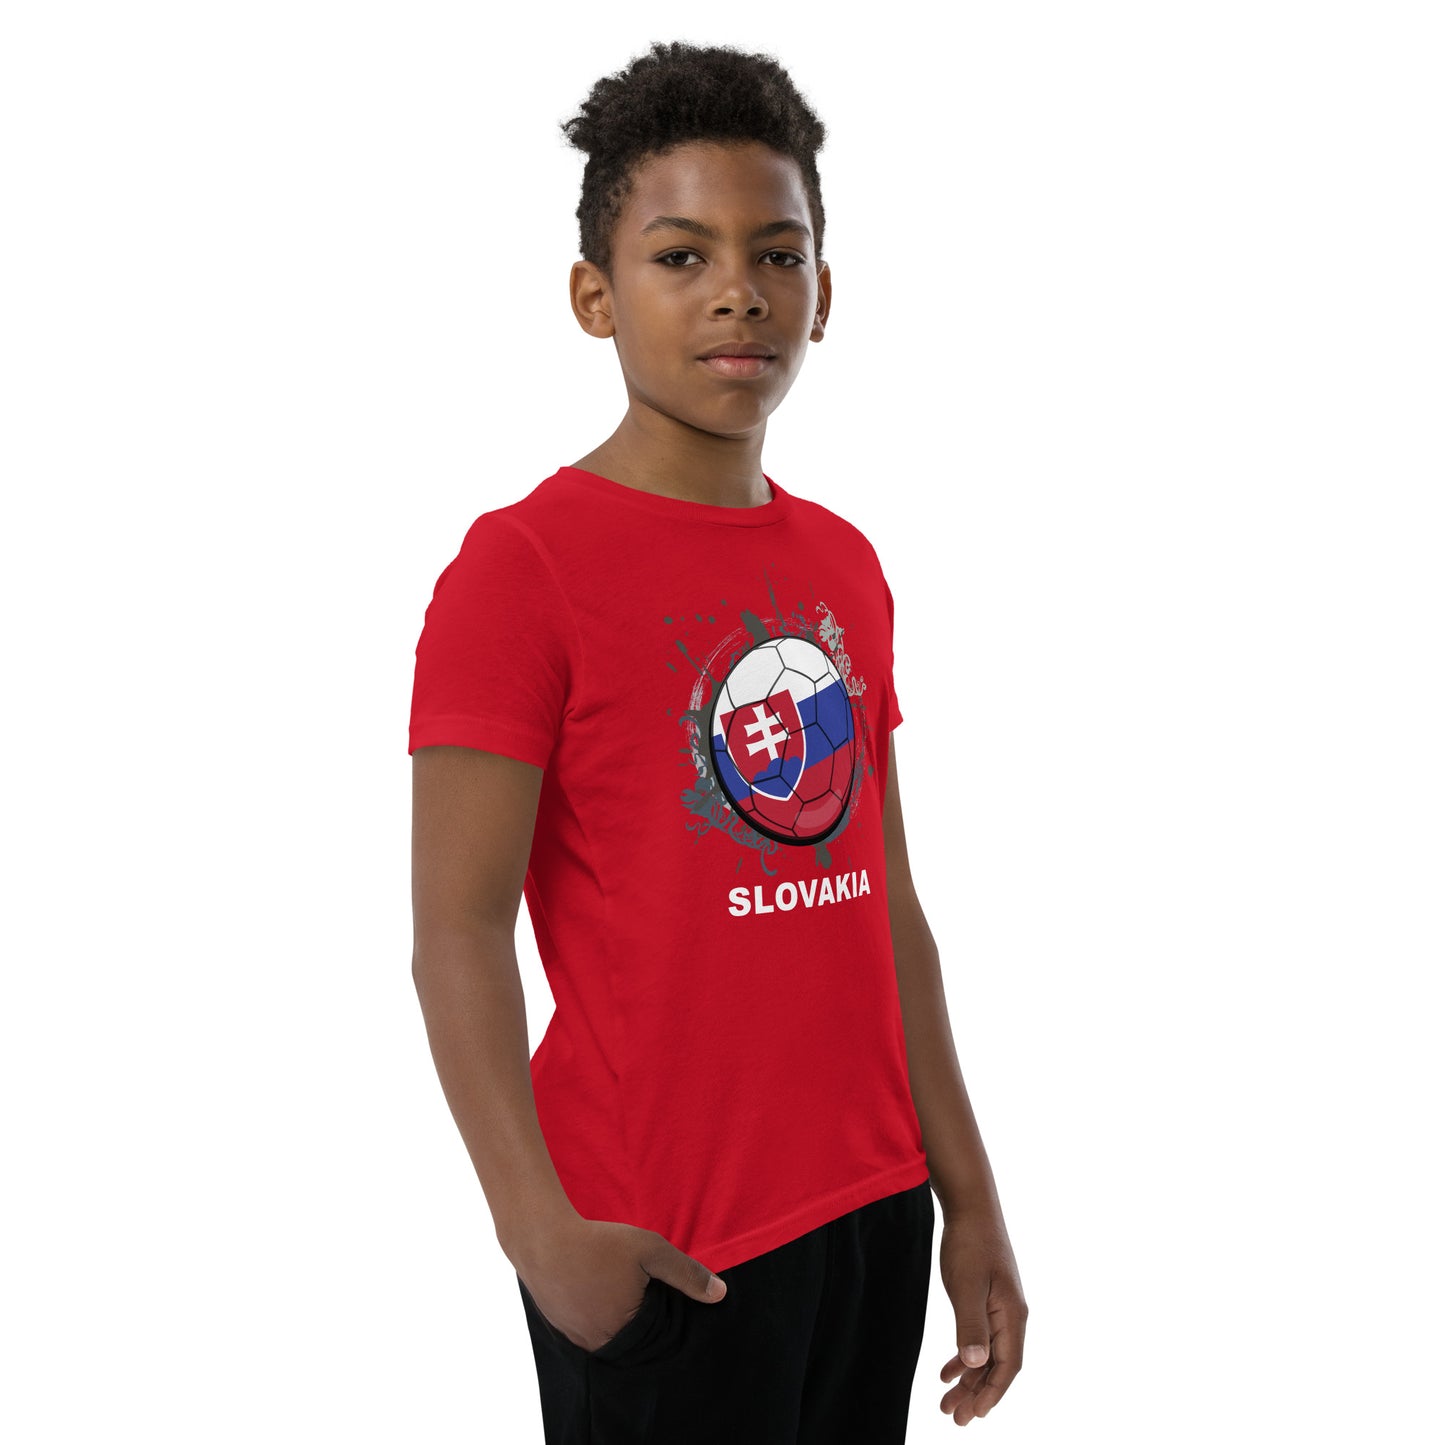 Slovakia Soccer Youth Short Sleeve T-Shirt - darks